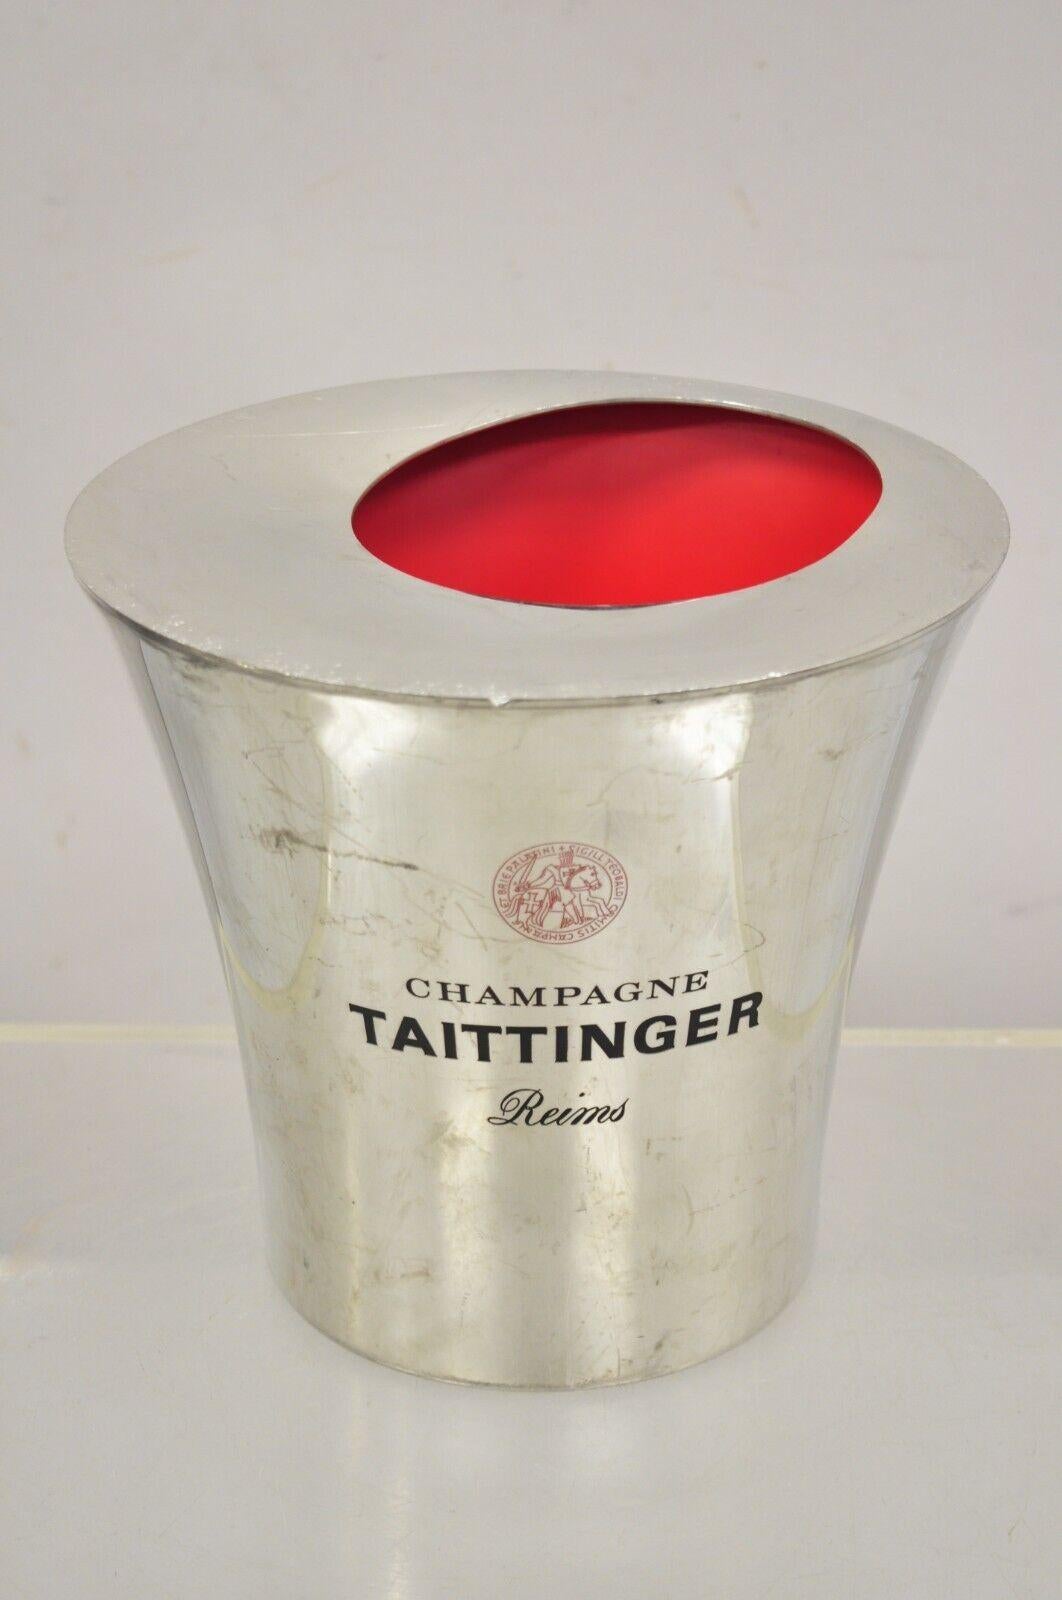 Seau à glace pour champagne Taittinger Reims en aluminium poli par Etain. Caractéristiques Construction en aluminium lourd et poli, intérieur peint en rouge, forme moderne et galbée, poinçons d'origine, fabriqué en France. Circa Late 20th Century.